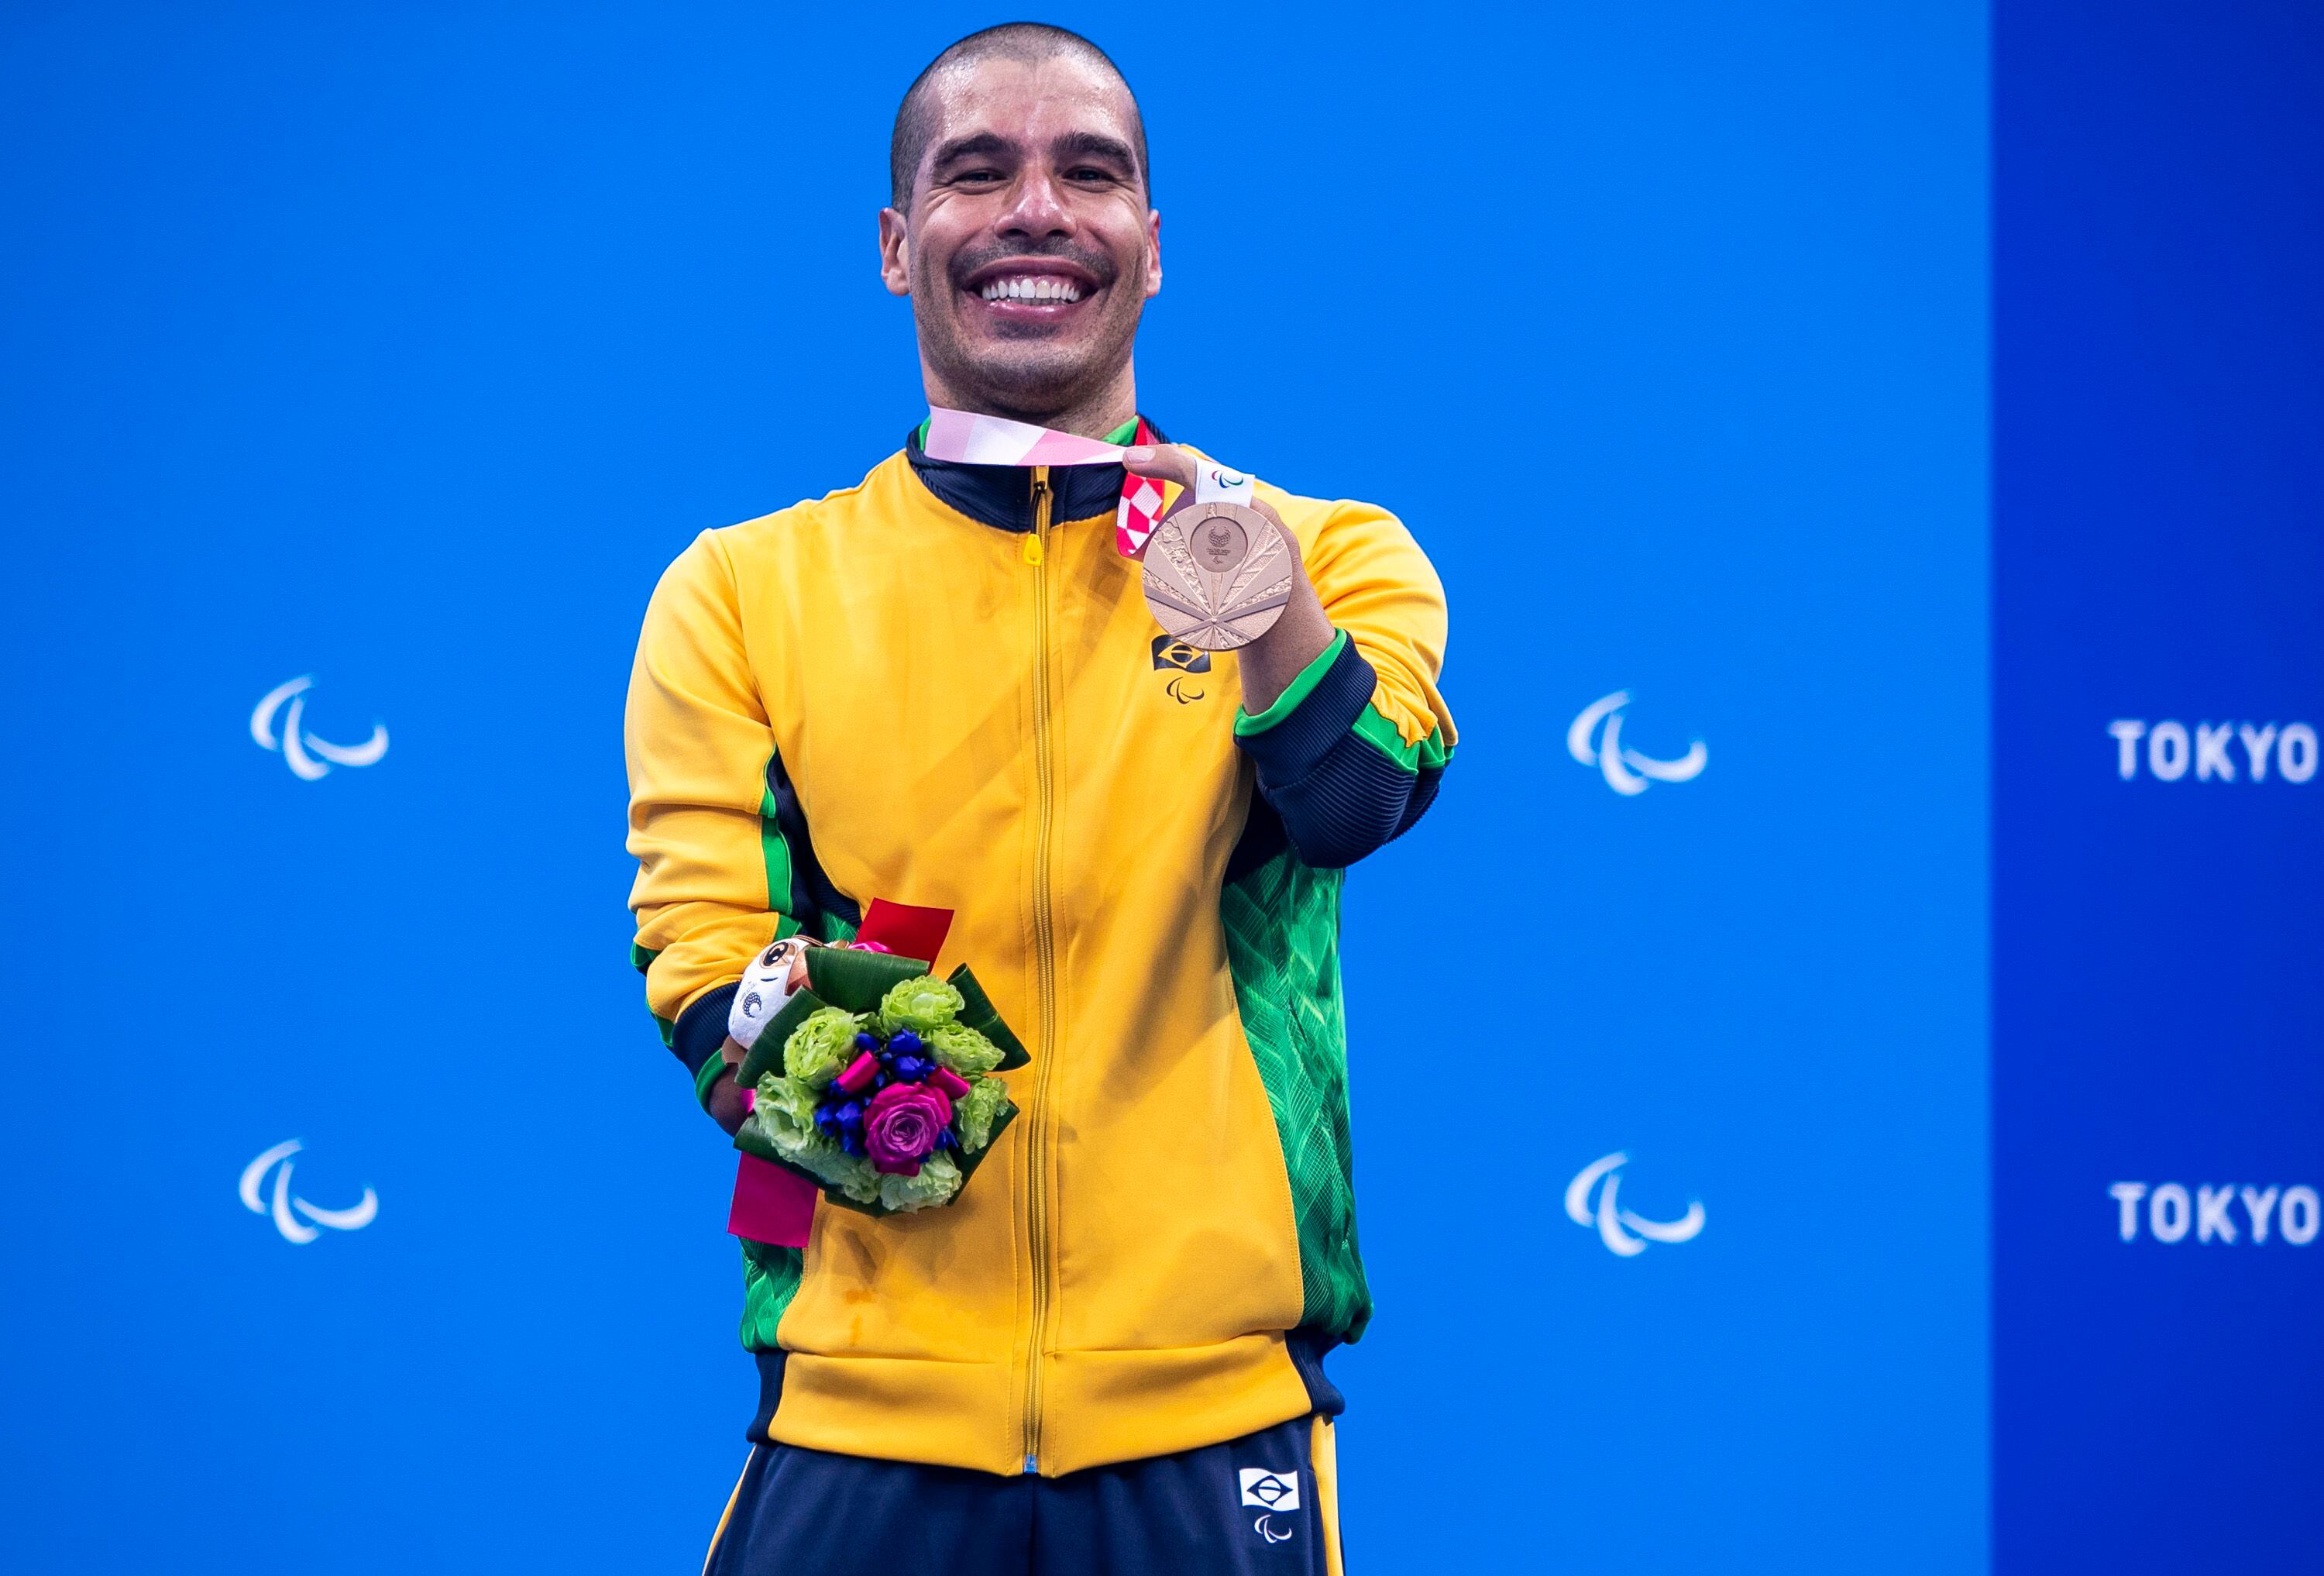 Daniel com uma das medalhas de bronze que conquistou em Tóquio 2020.